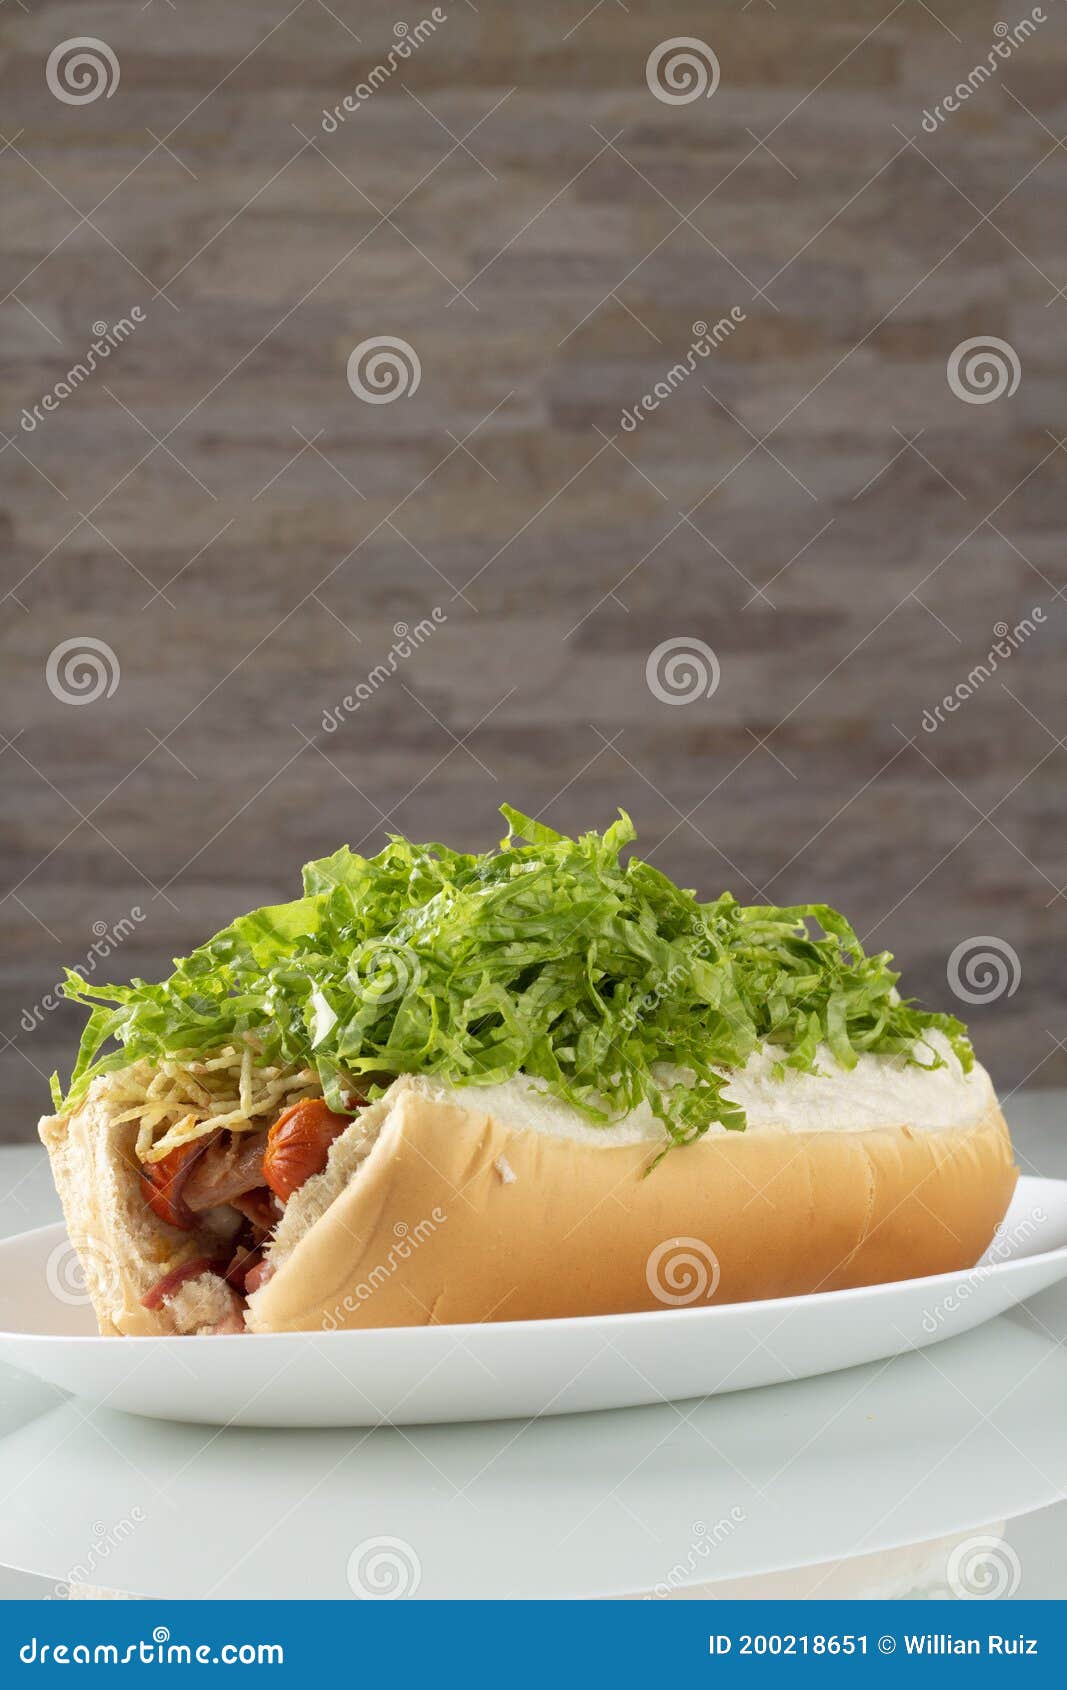 hot dog cachorro quente bacon salada lanche